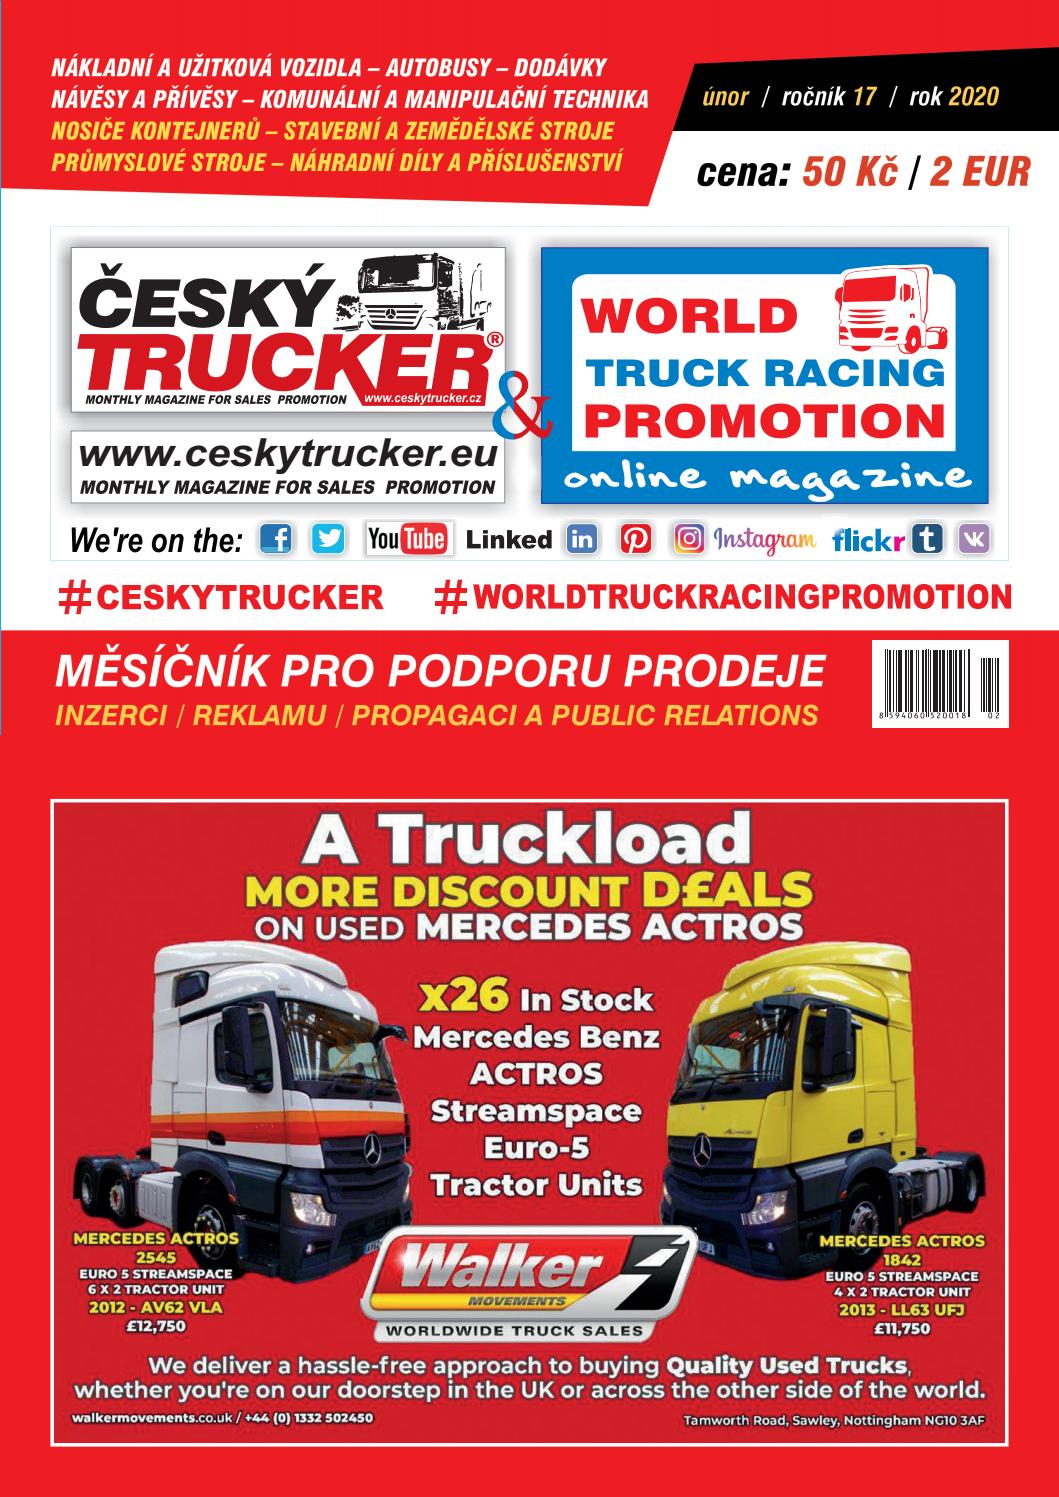 Faszination Garten Schön 02 2020 Äesk Trucker by Äesk Trucker Monthly Magazine